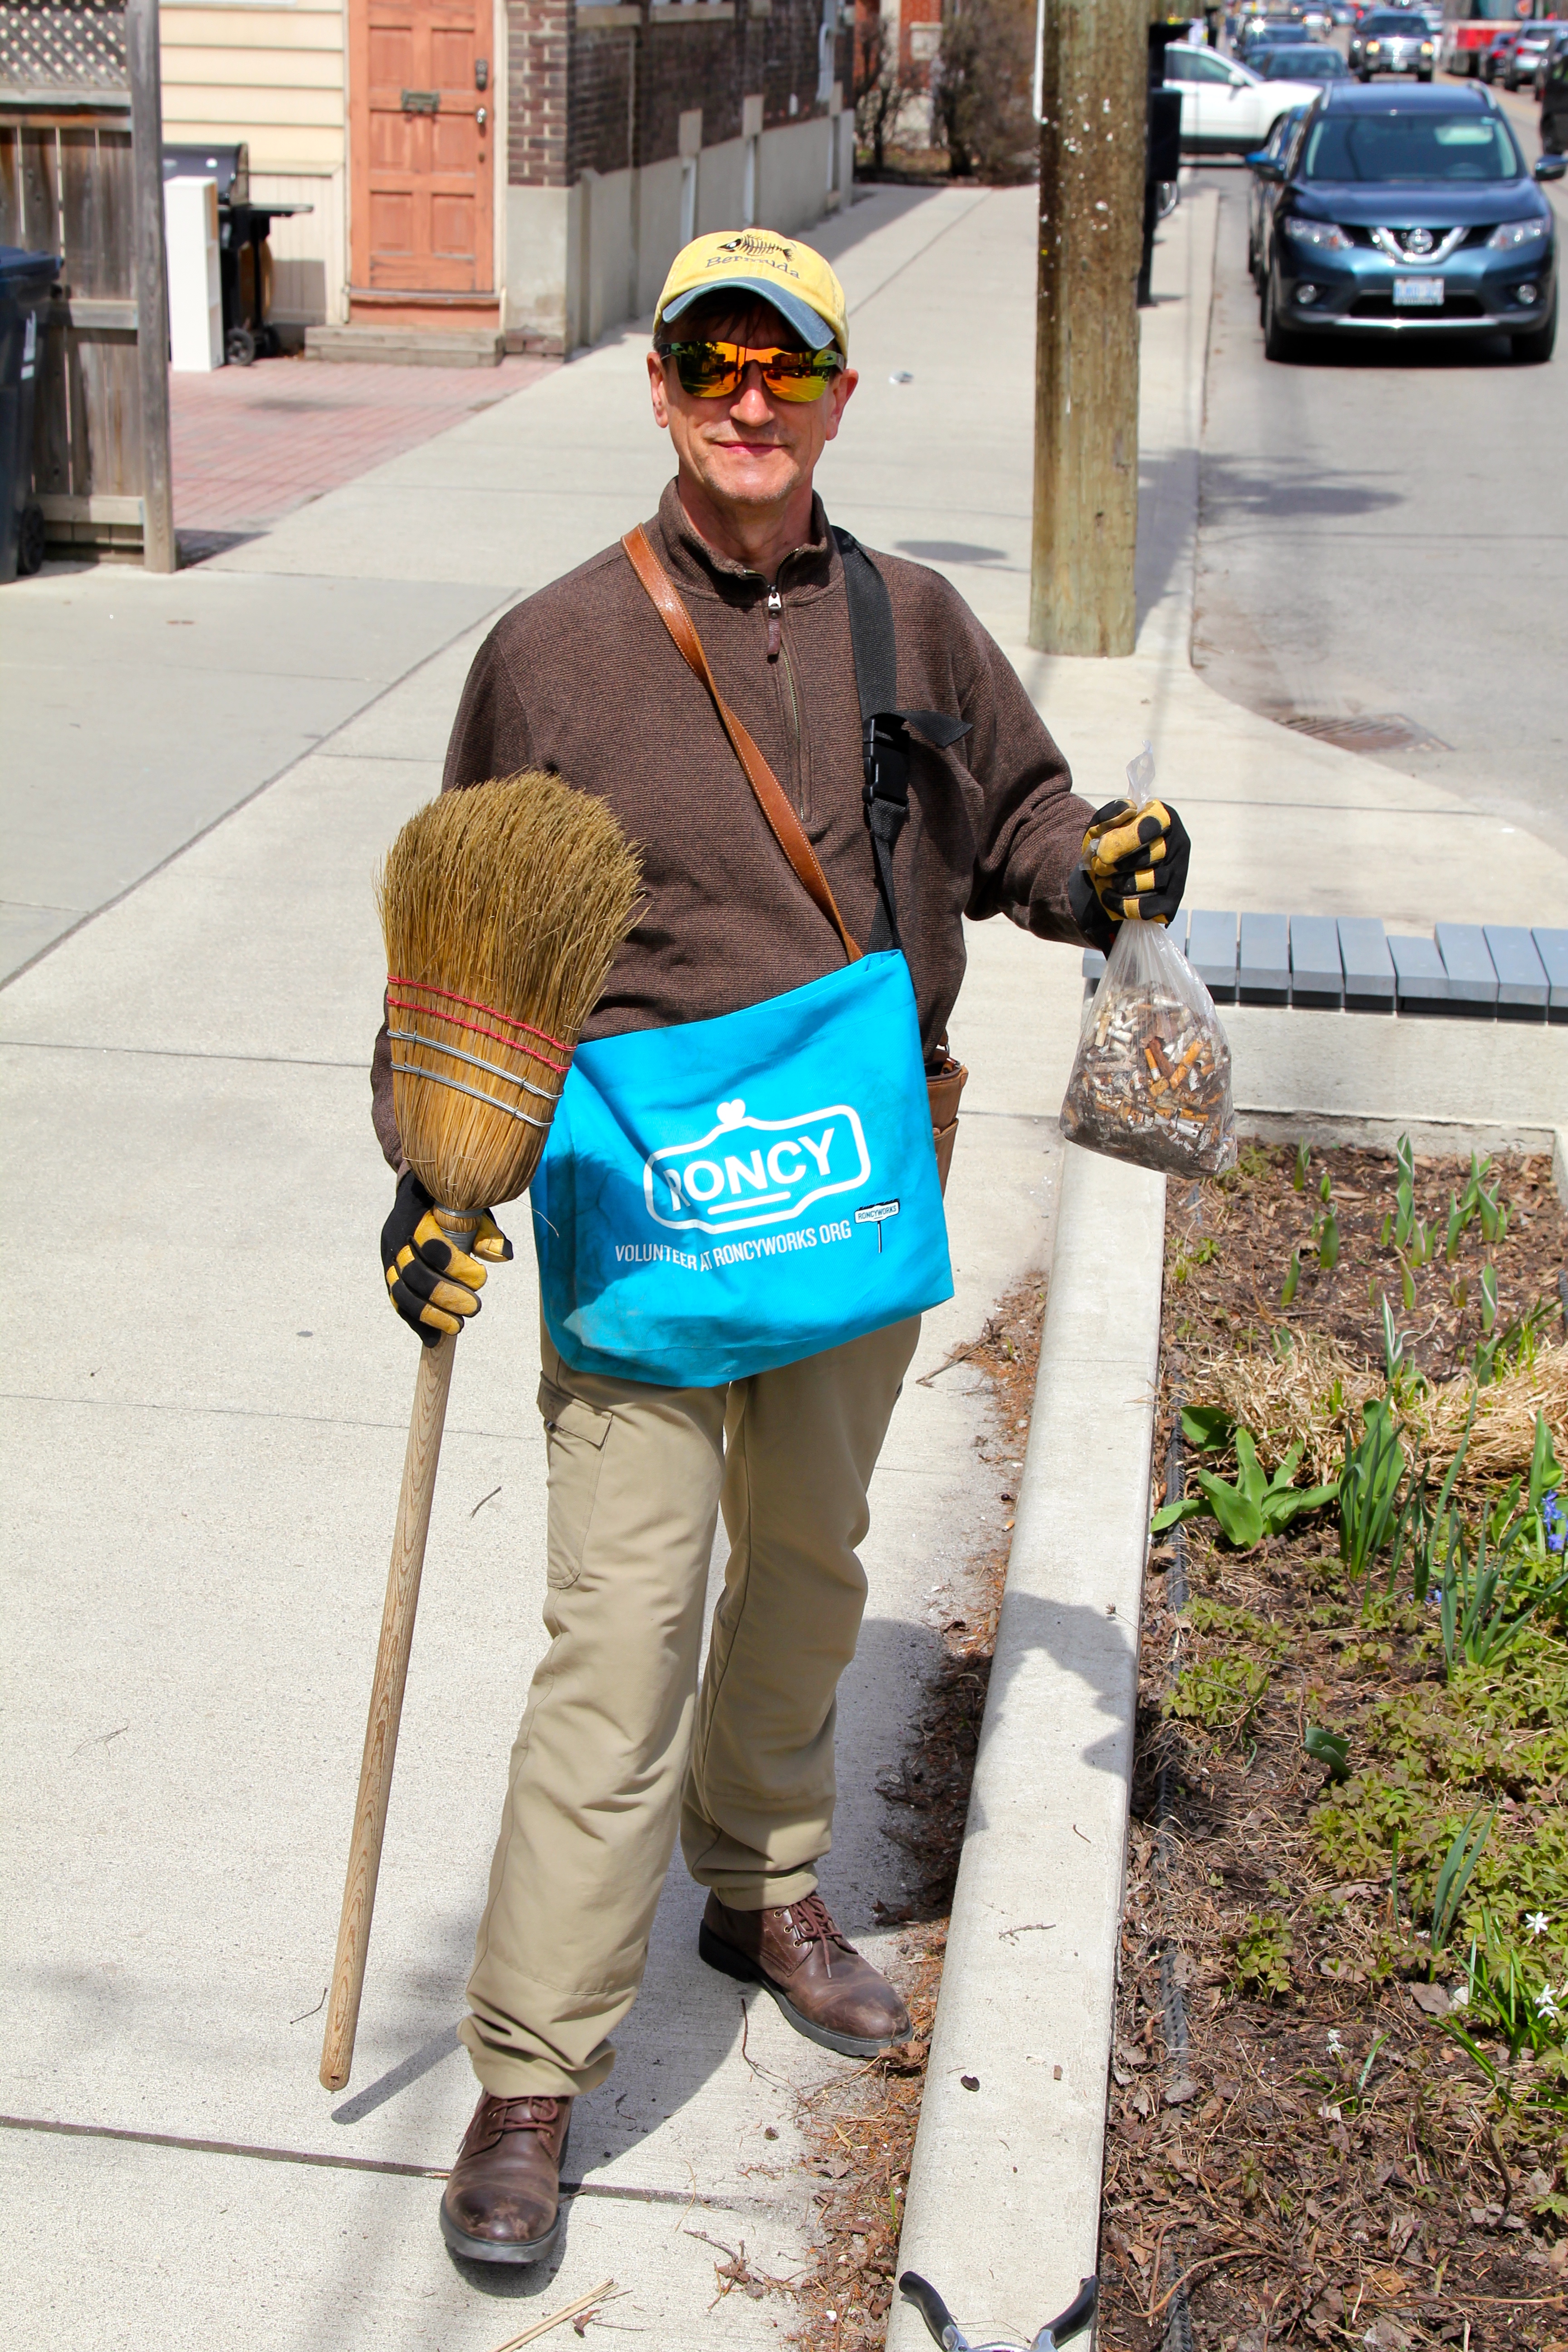 RoncyWorks volunteer holding broom and bag of cigarette litter.